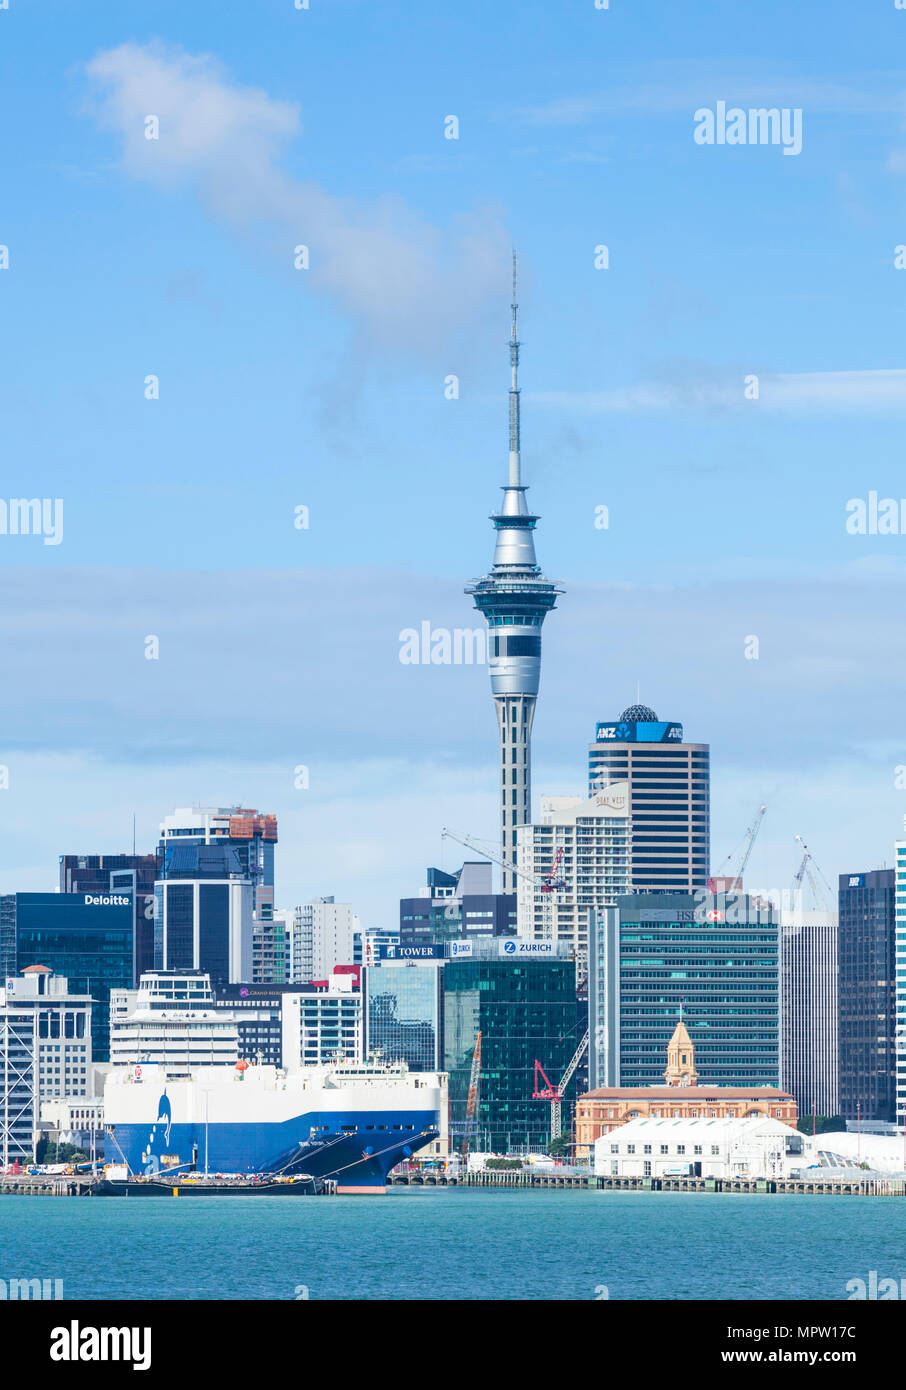 Nuova Zelanda Auckland Nuova Zelanda Isola del nord dello skyline di Auckland Waitemata Harbour cbd Sky Tower e la zona del molo del lungomare auckland nz Foto Stock